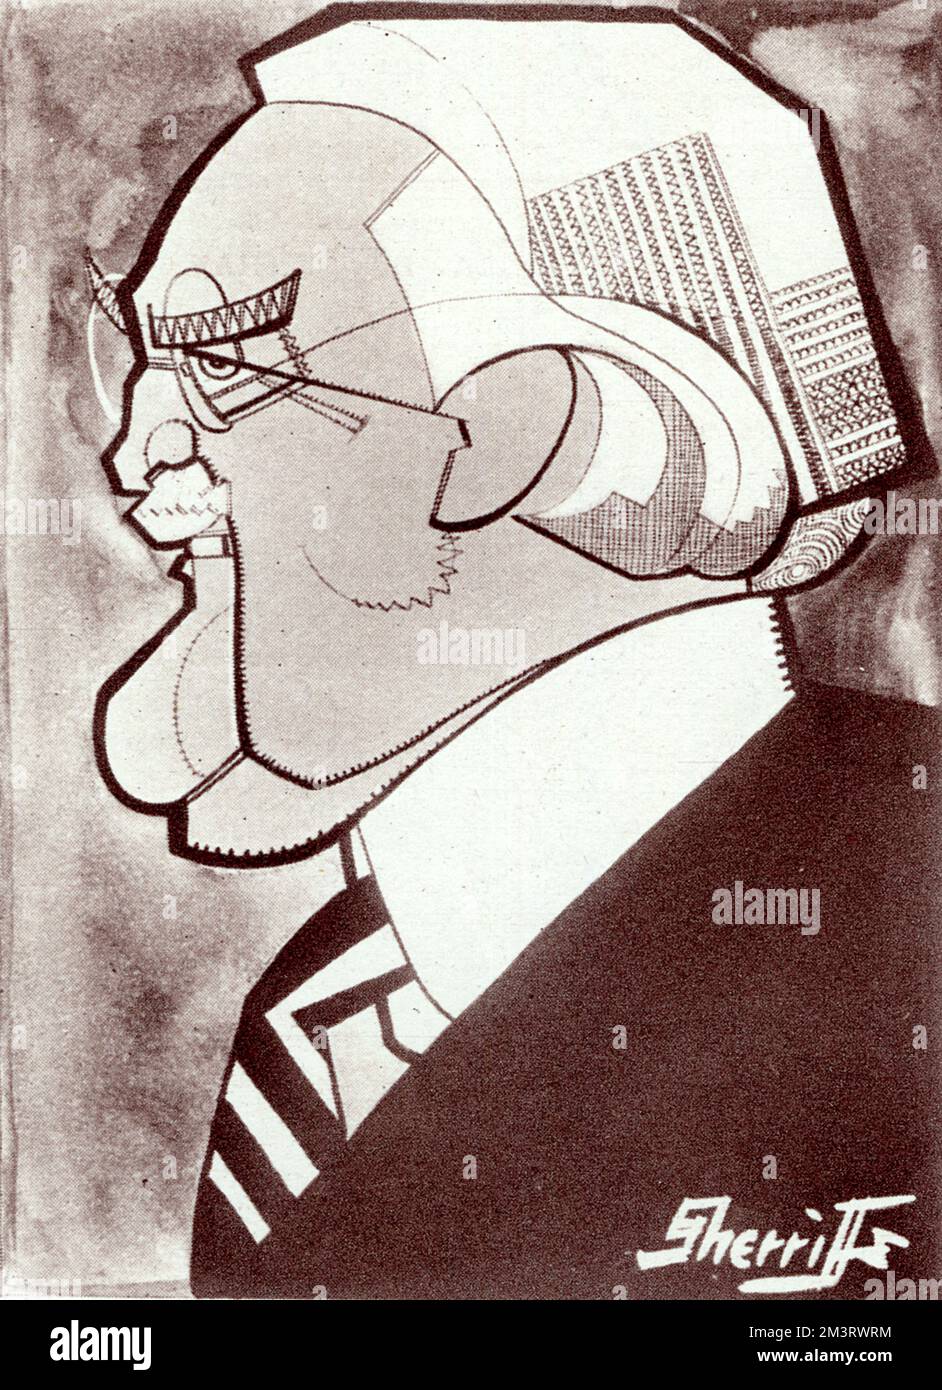 Harry Gordon Selfridge (1858 - 1947), né à Ripon, Wisconsin, Etats-Unis. Organisé Selfridge & amp; Co (1909) et l'a développé en l'un des plus grands grands grands magasins d'Europe. Caricaturée par Sherriffe dans The Sketch en 1927. Date: 1927 Banque D'Images